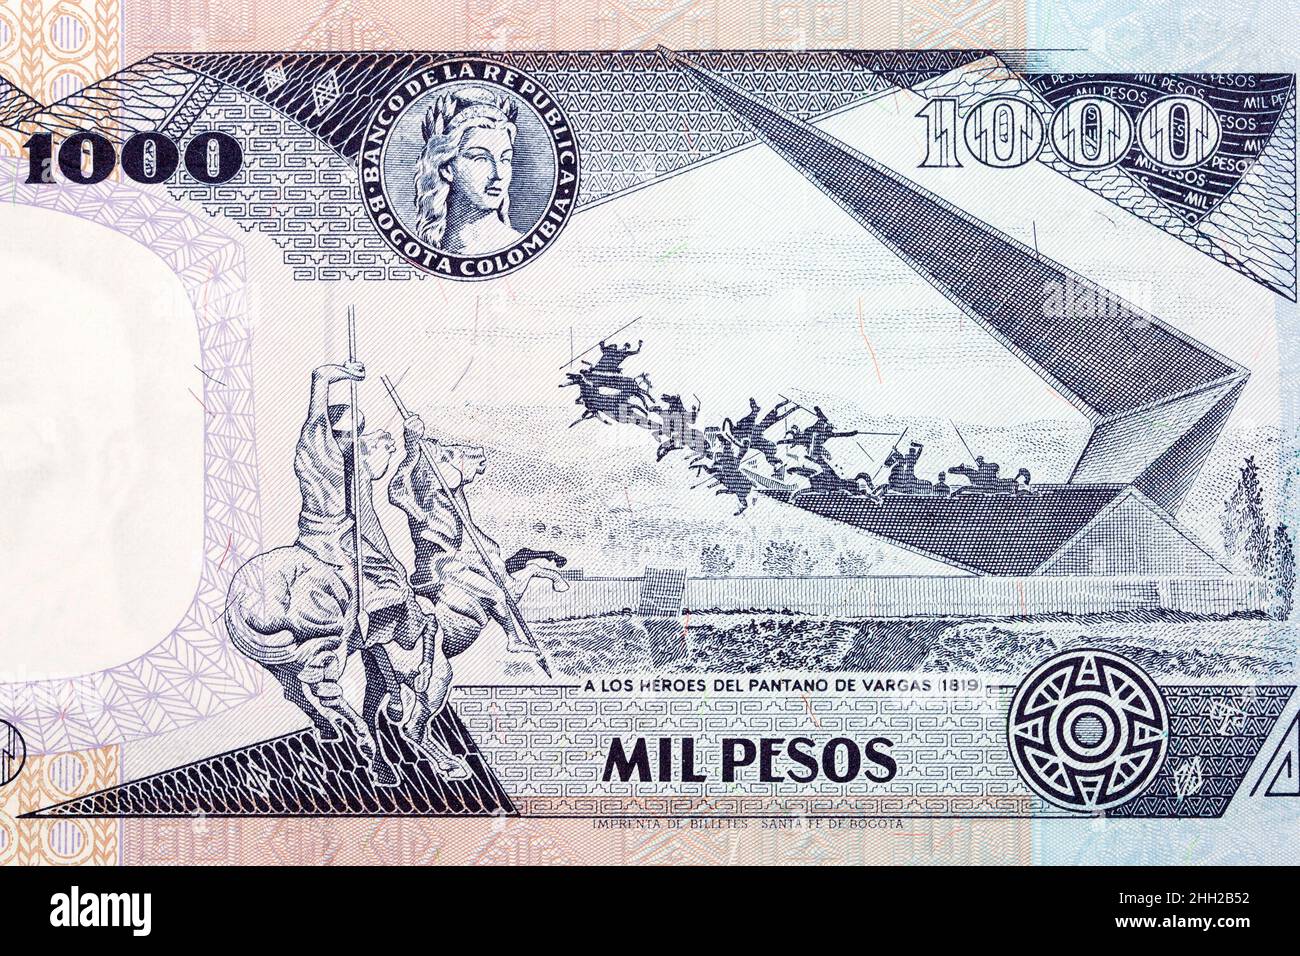 Szene zu Ehren von 1819 Kampfhelden aus dem alten kolumbianischen Geld - Pesos Stockfoto